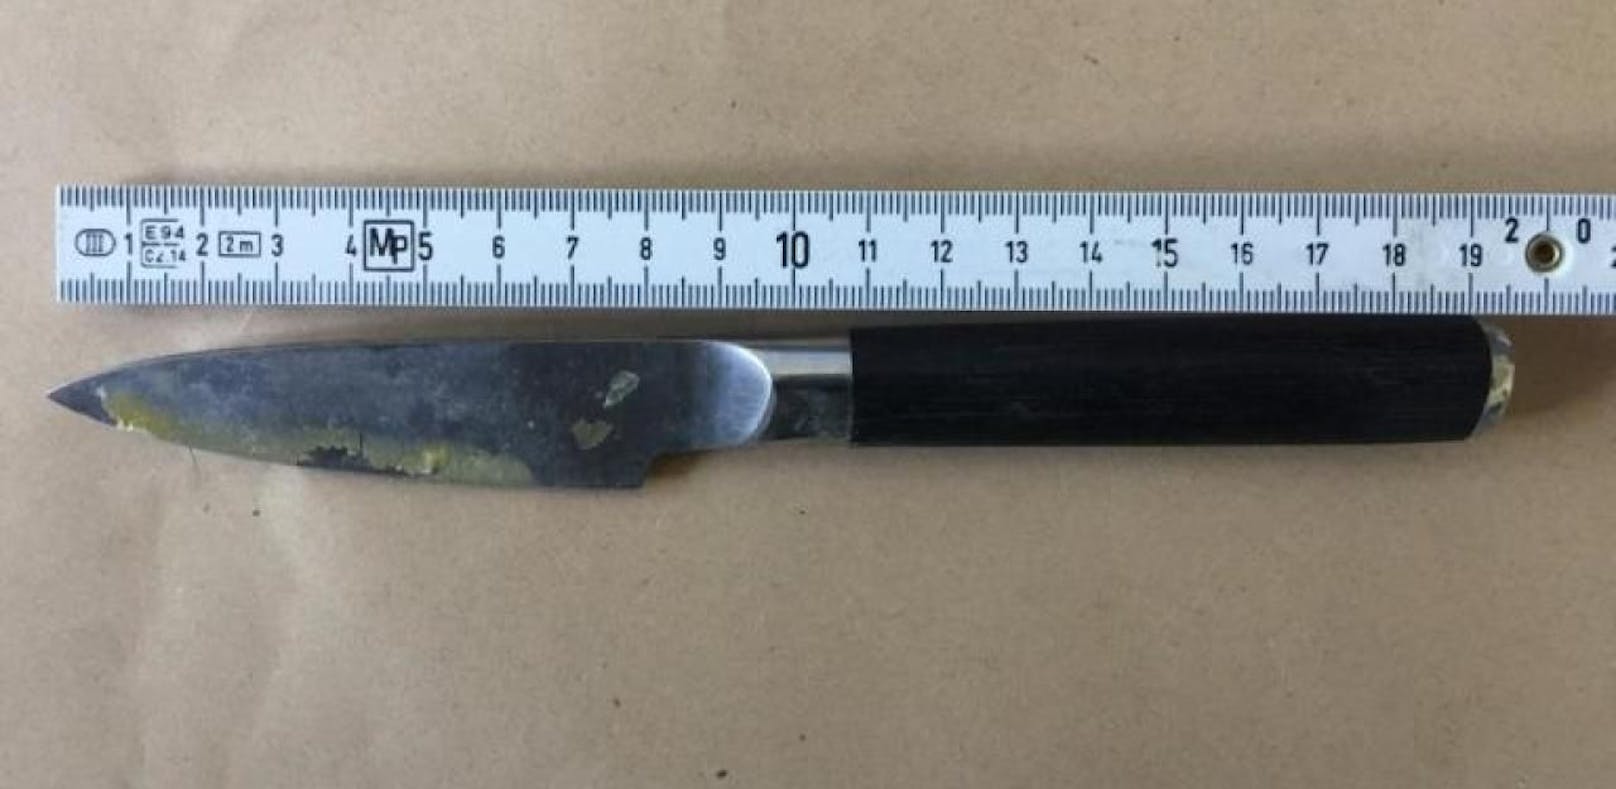 Dieses Messer konnte von der Polizei sichergestellt werden. 